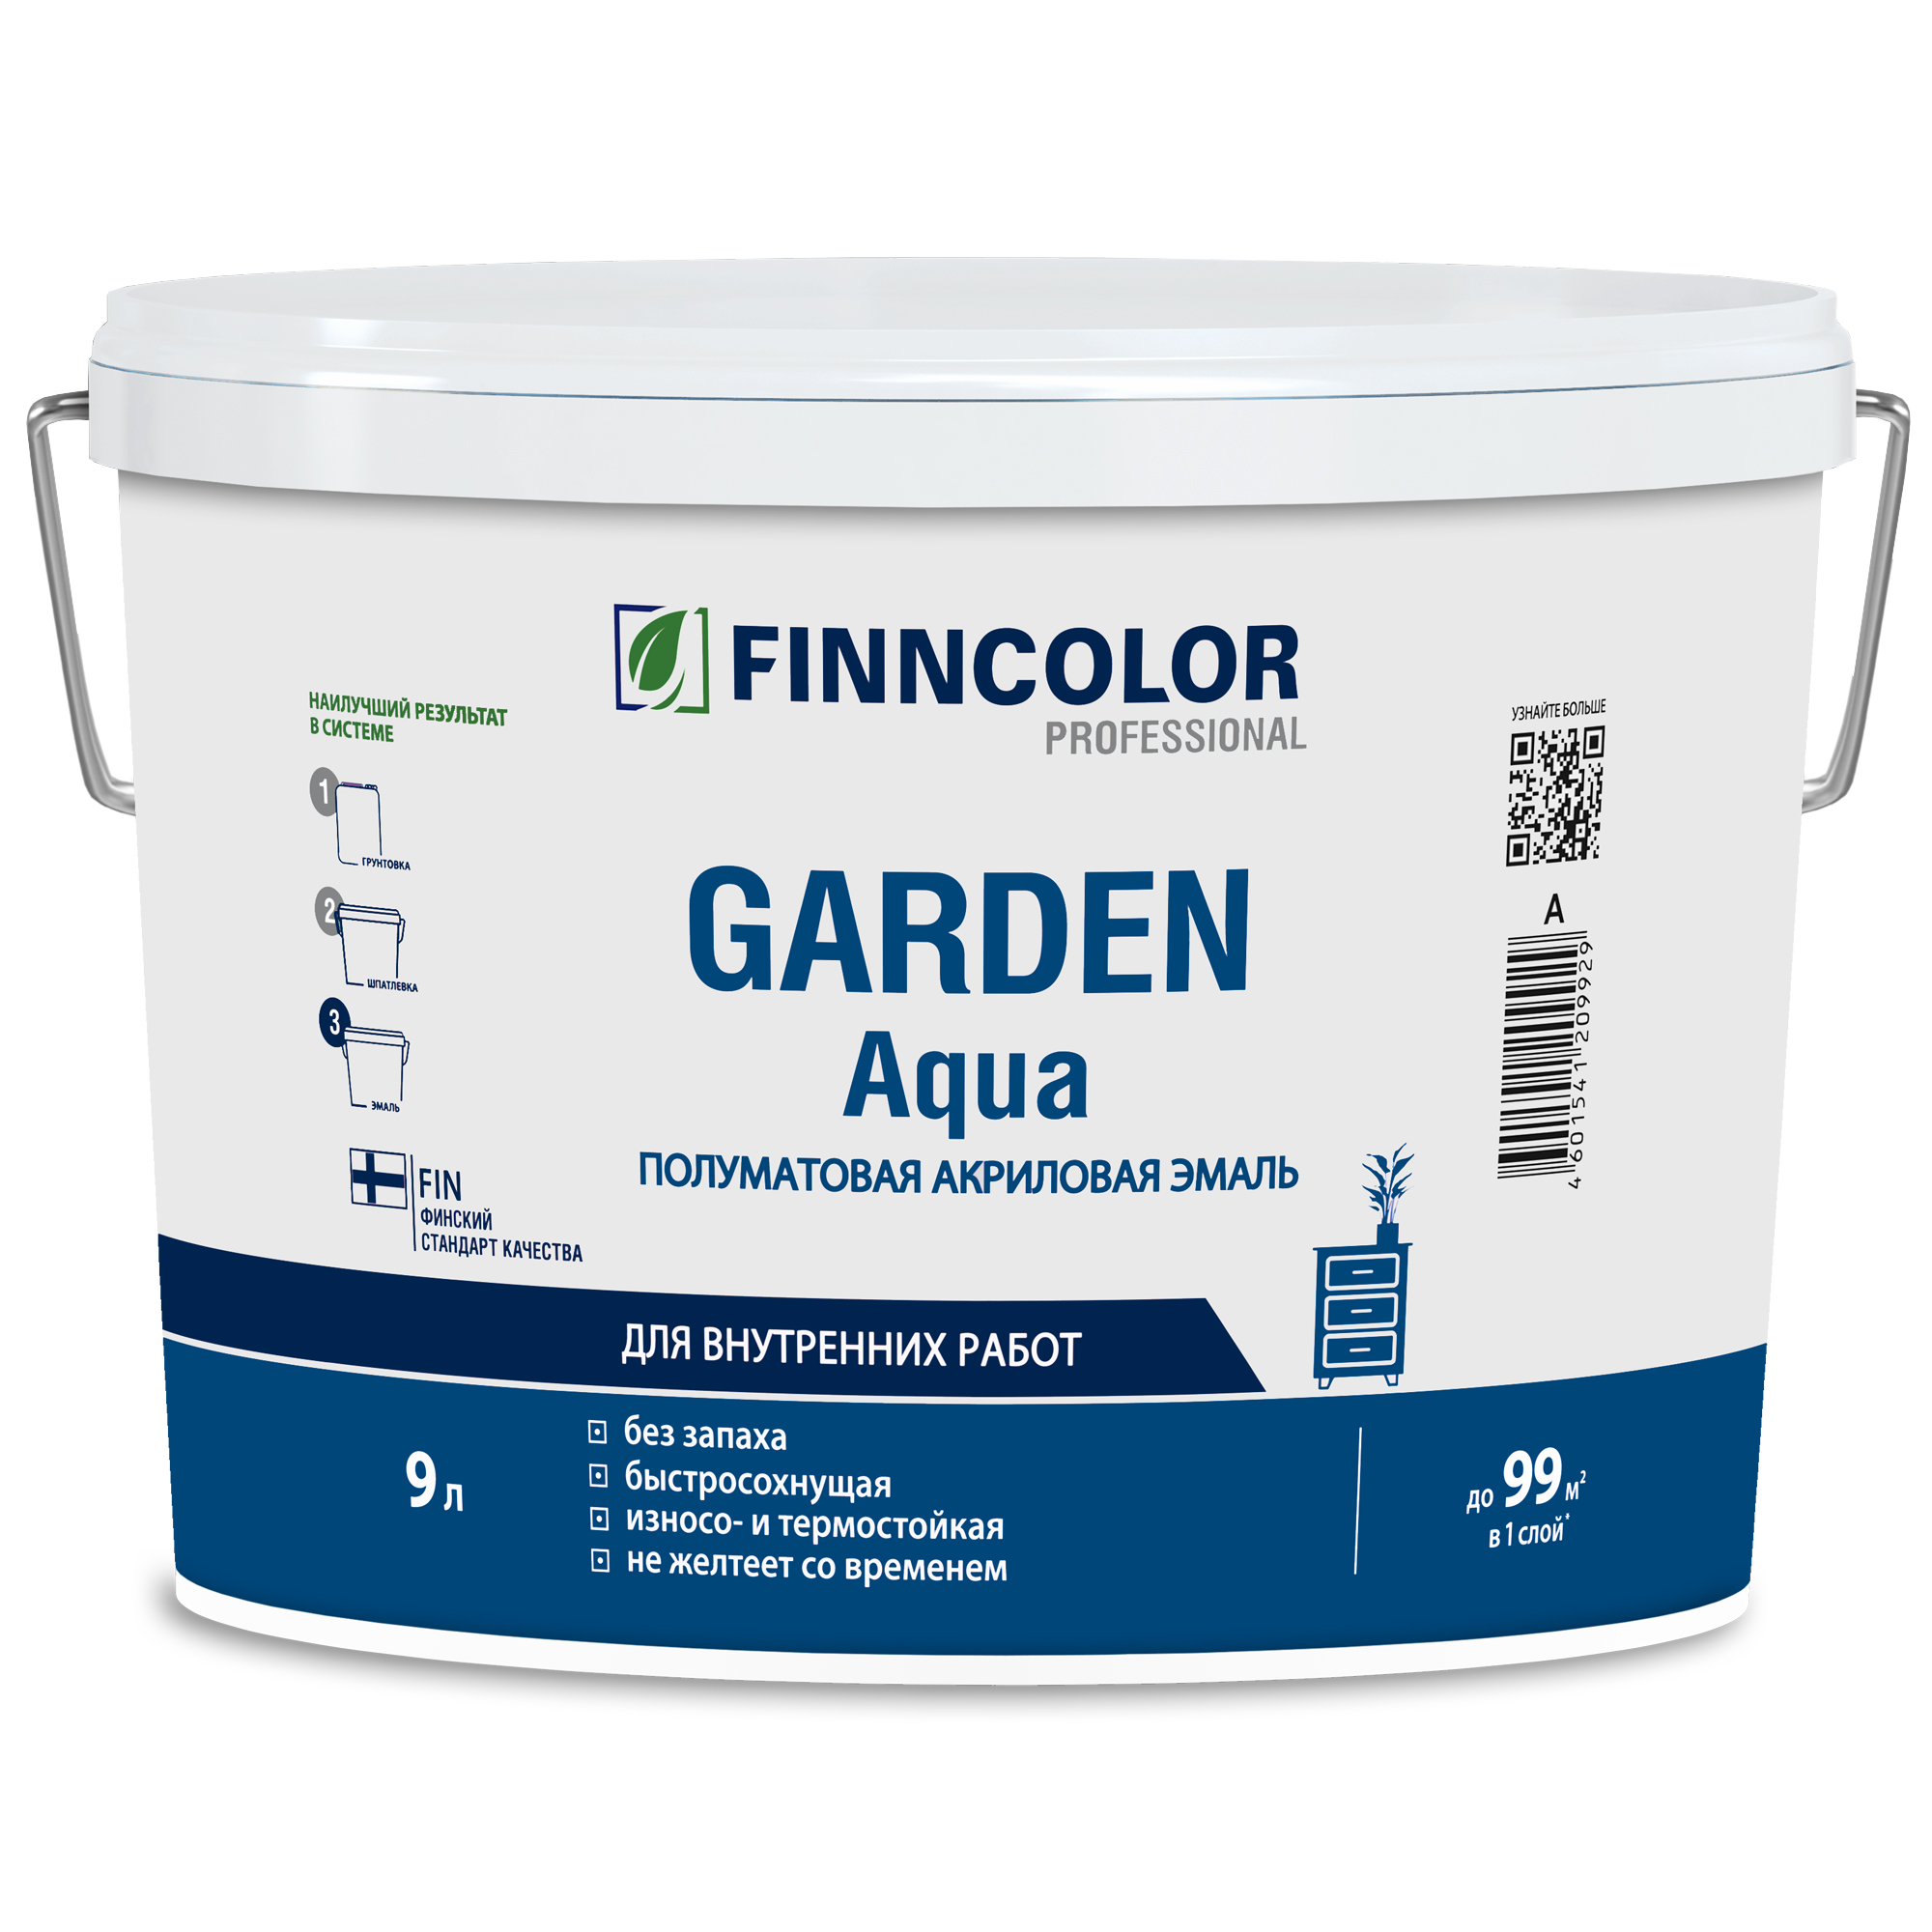 Finncolor Garden Aqua